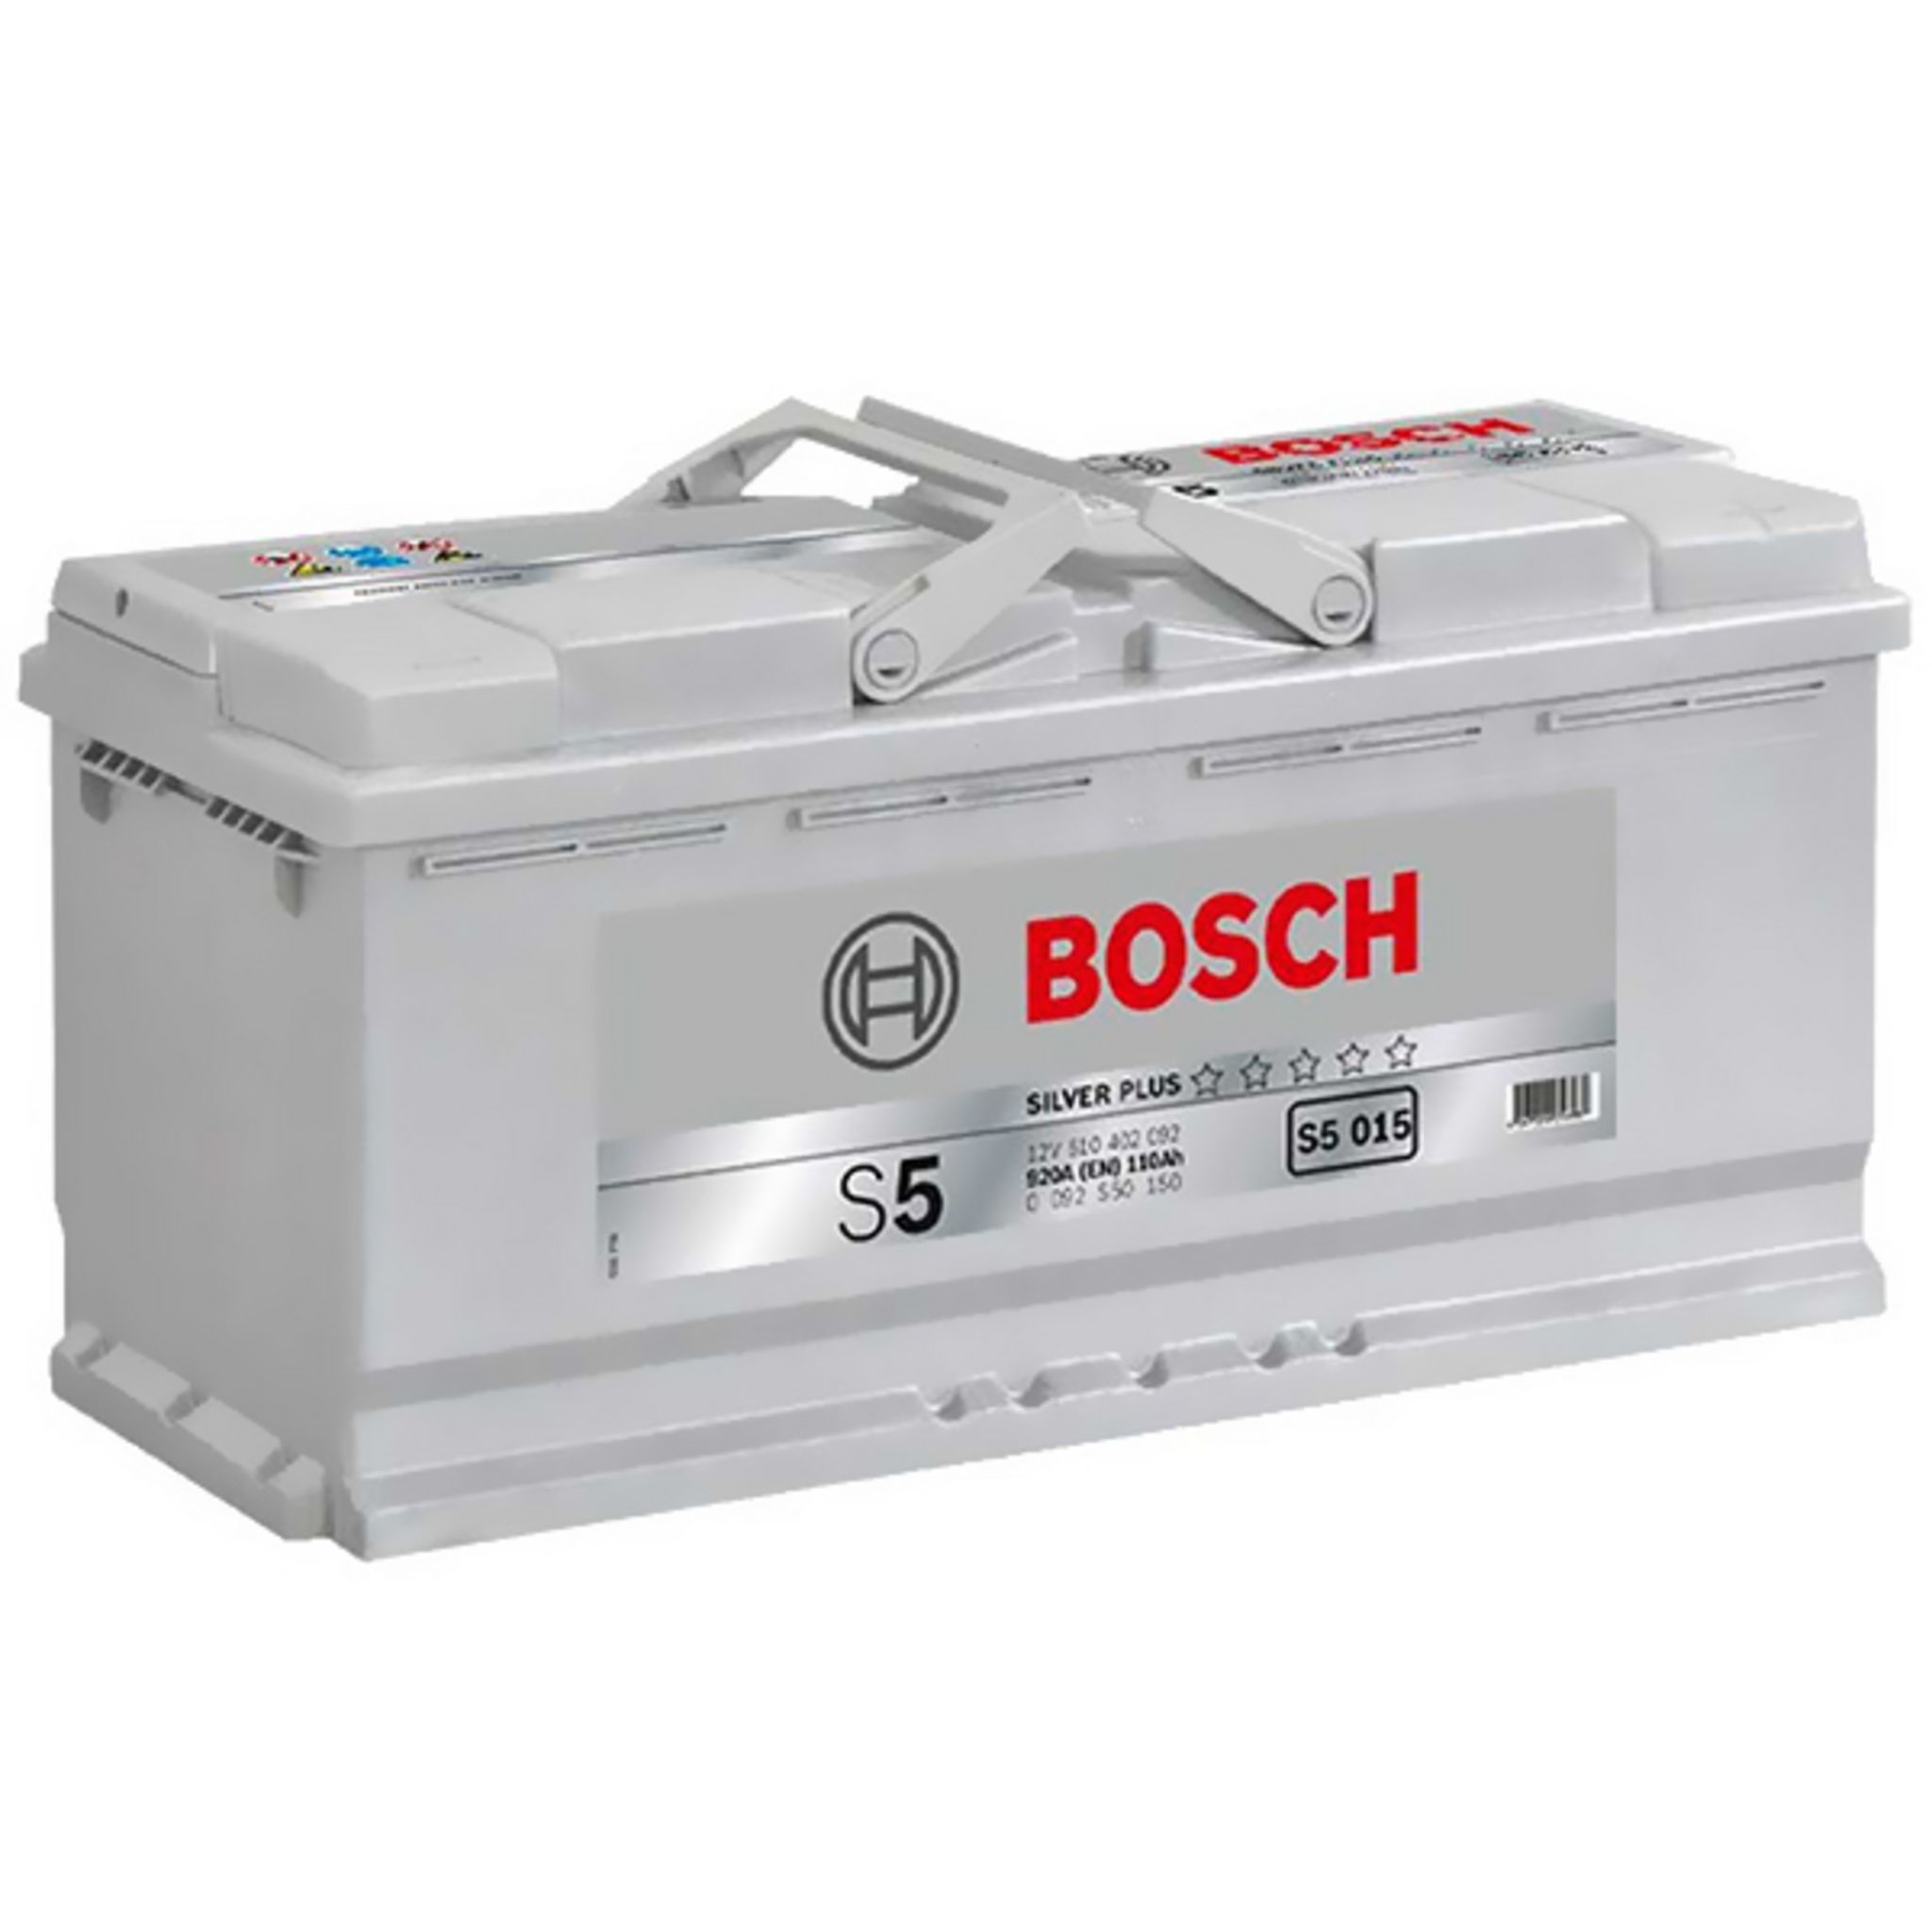 BOSCH Batterie Bosch S5015 110Ah 920A BOSCH pas cher 